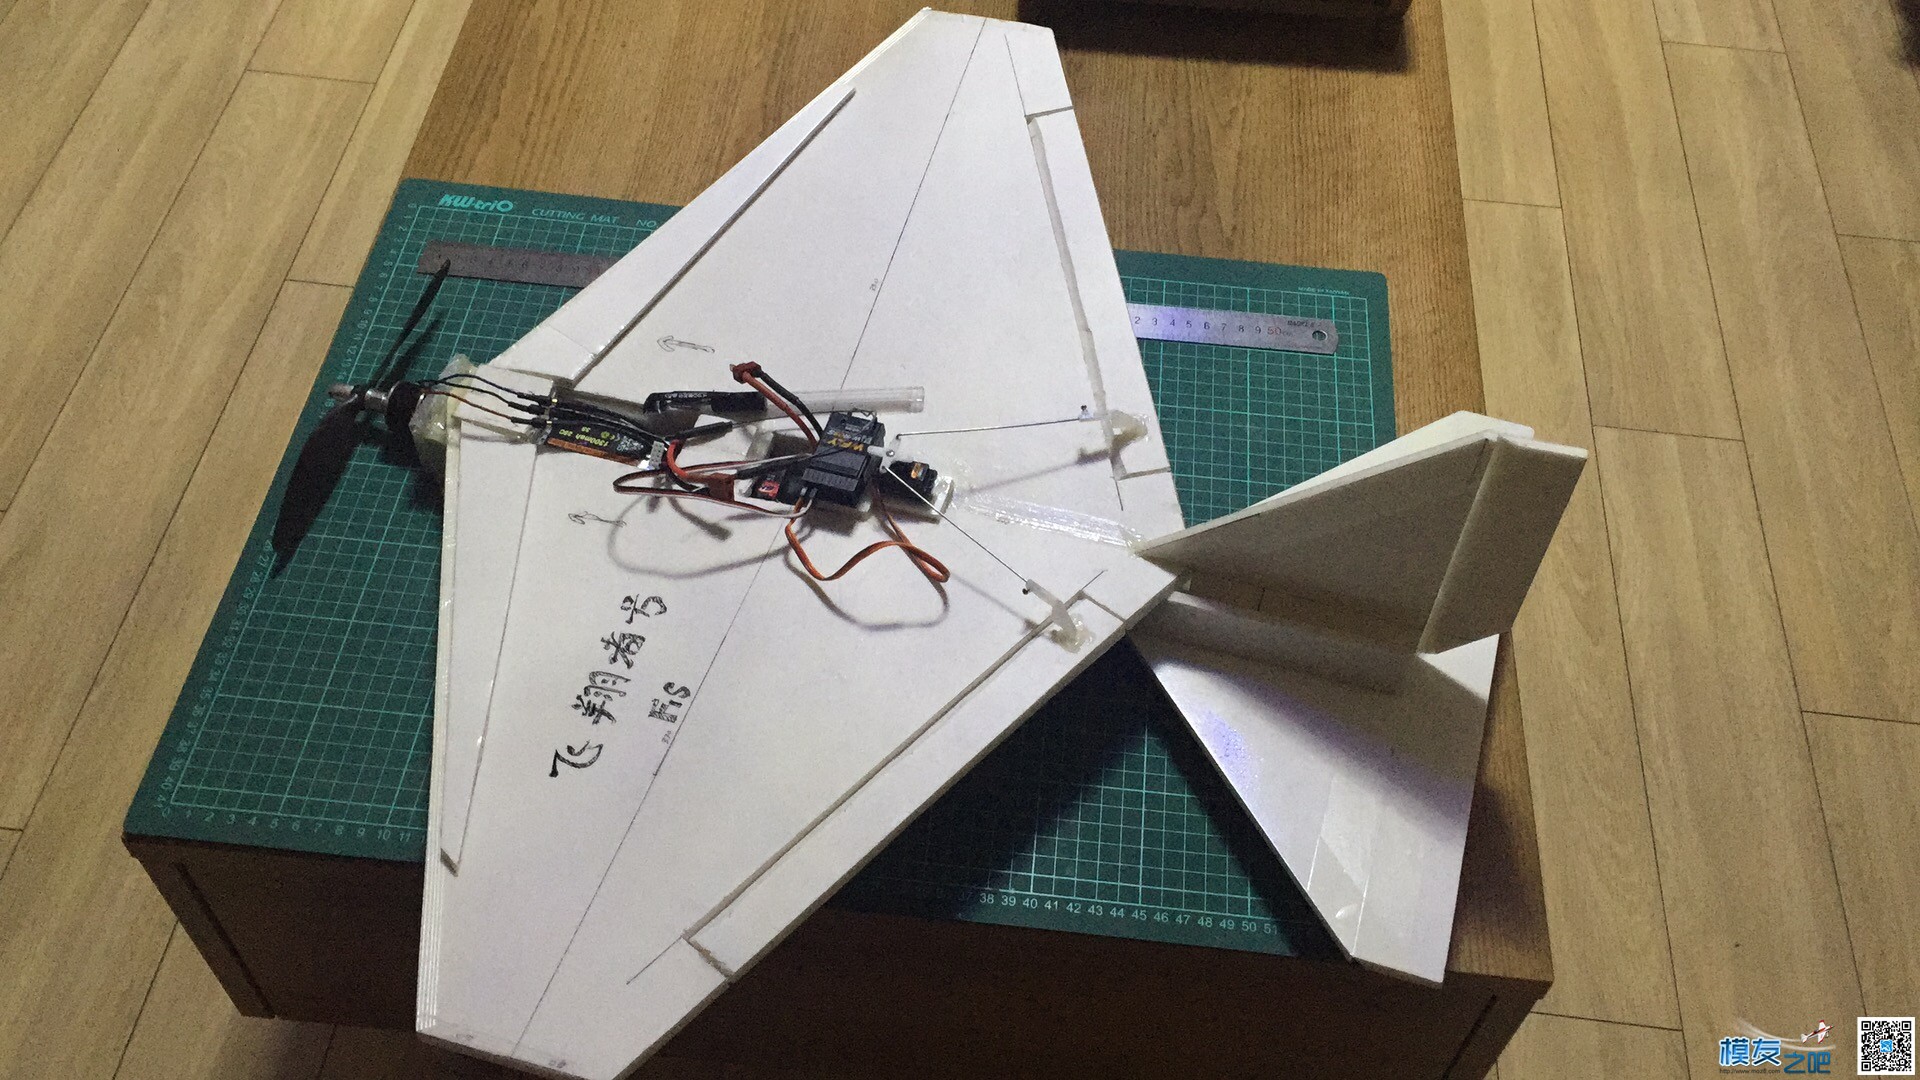 慢机飞翔号固定翼制作 固定翼,电池,舵机,电调,图纸 作者:flyin00 3703 